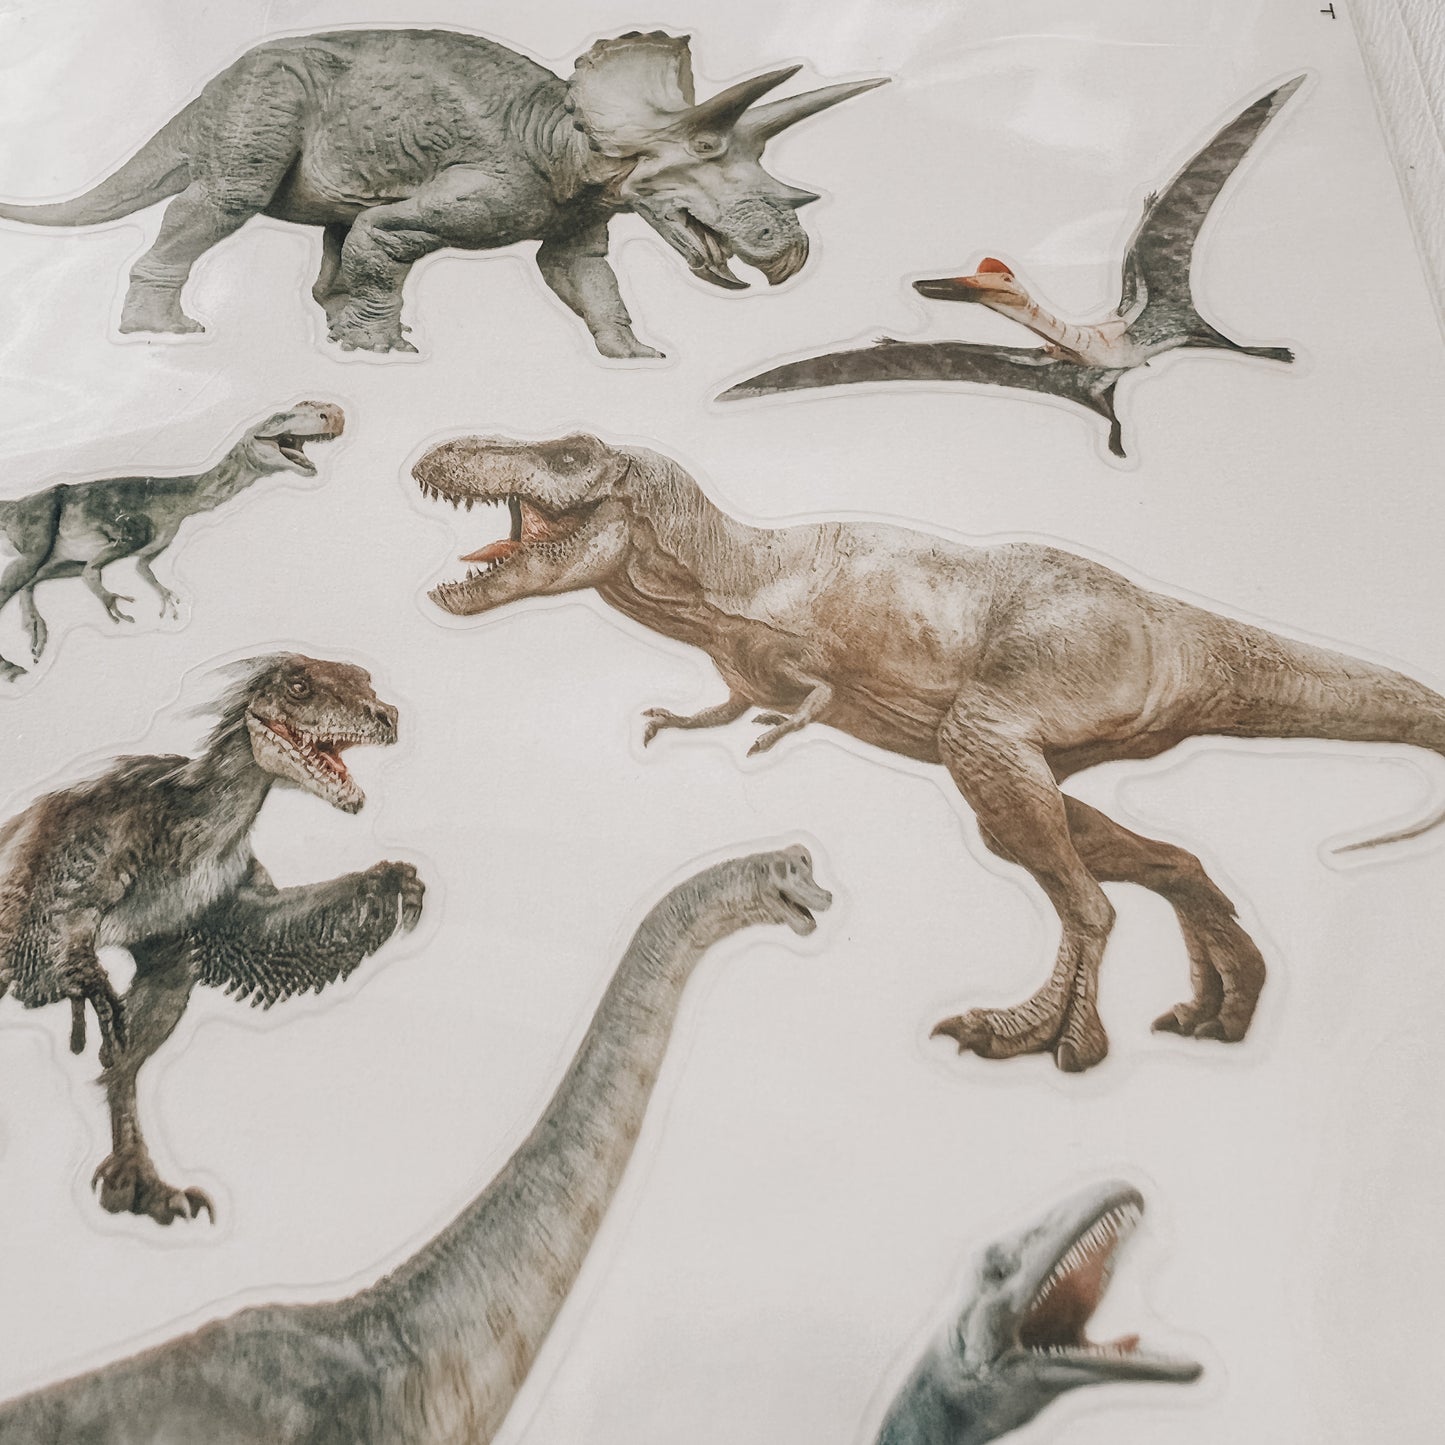 Autocollants dinosaures réalistes